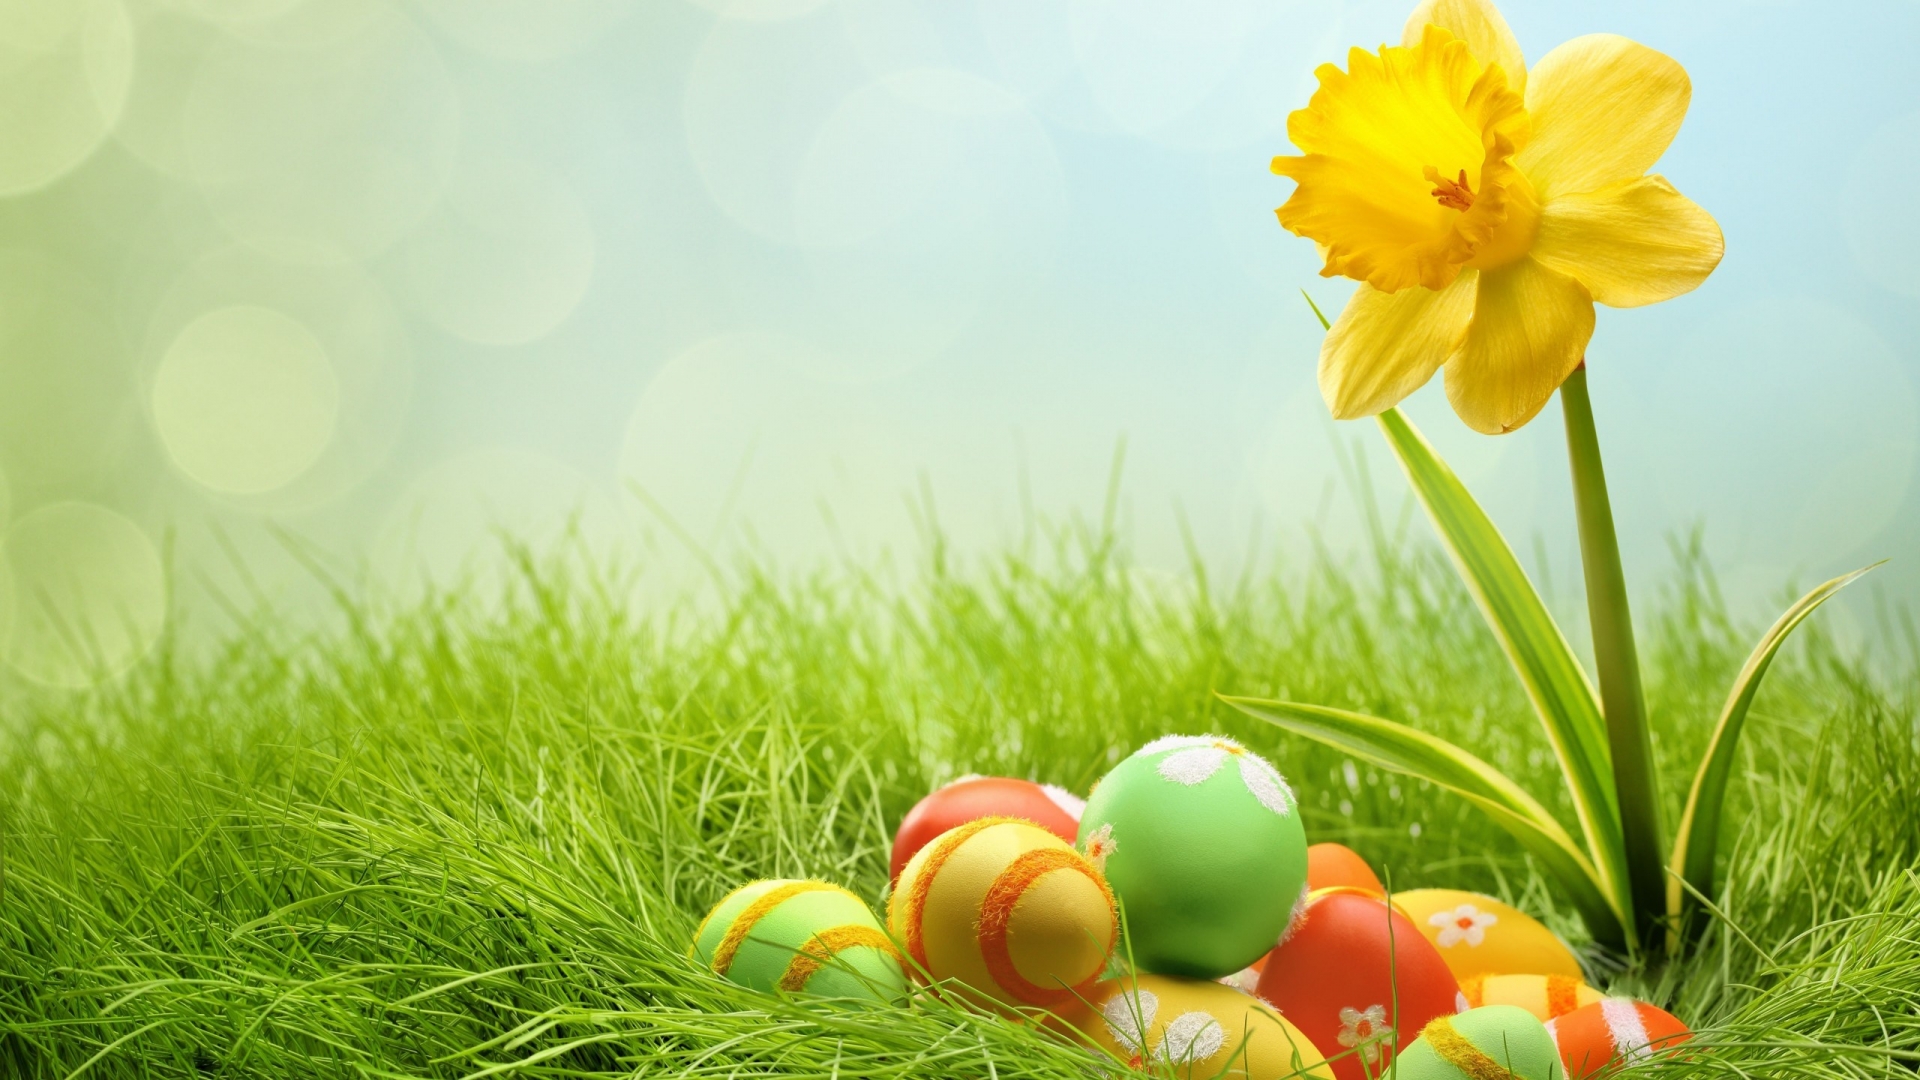 2014 Easter Eggs for 1920 x 1080 HDTV 1080p resolution